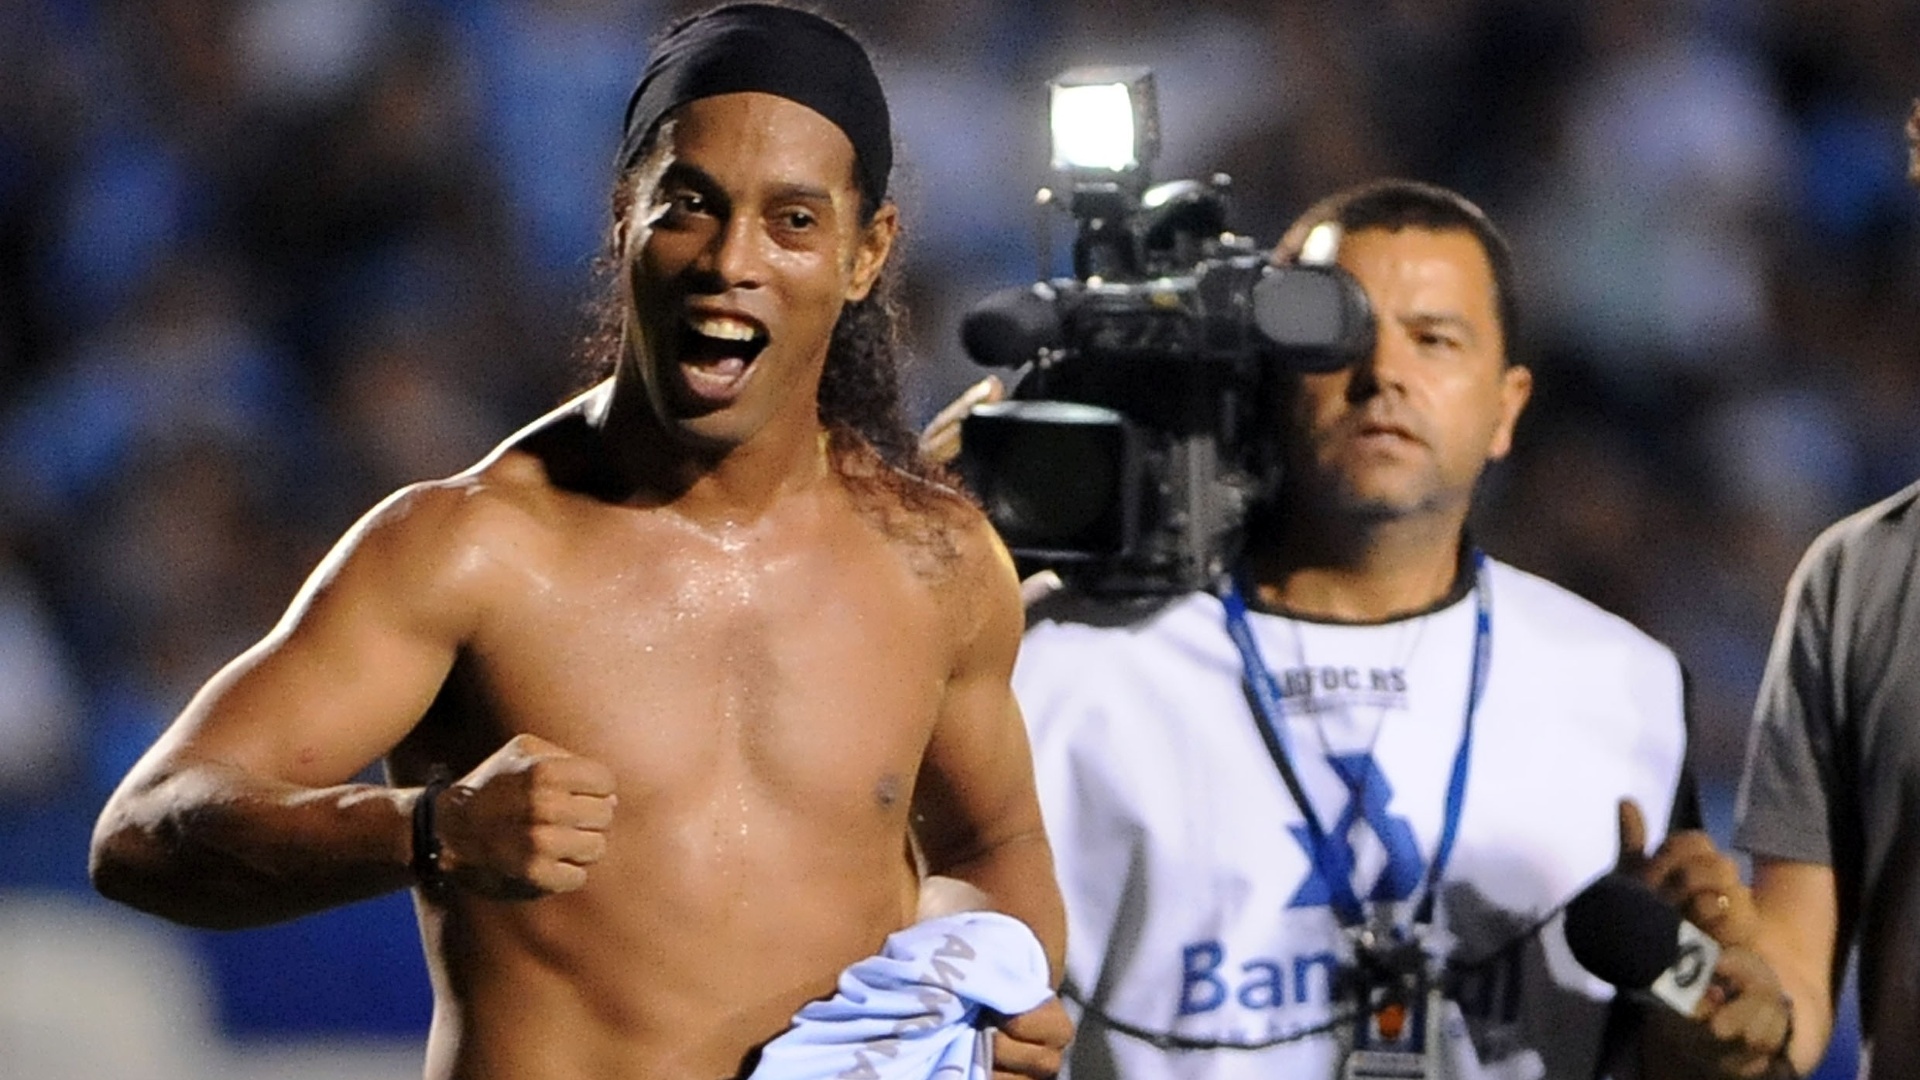 Com a camisa do Grêmio na mão, Ronaldinho Gaúcho comemora vitória do Atlético-MG sobre os gaúchos